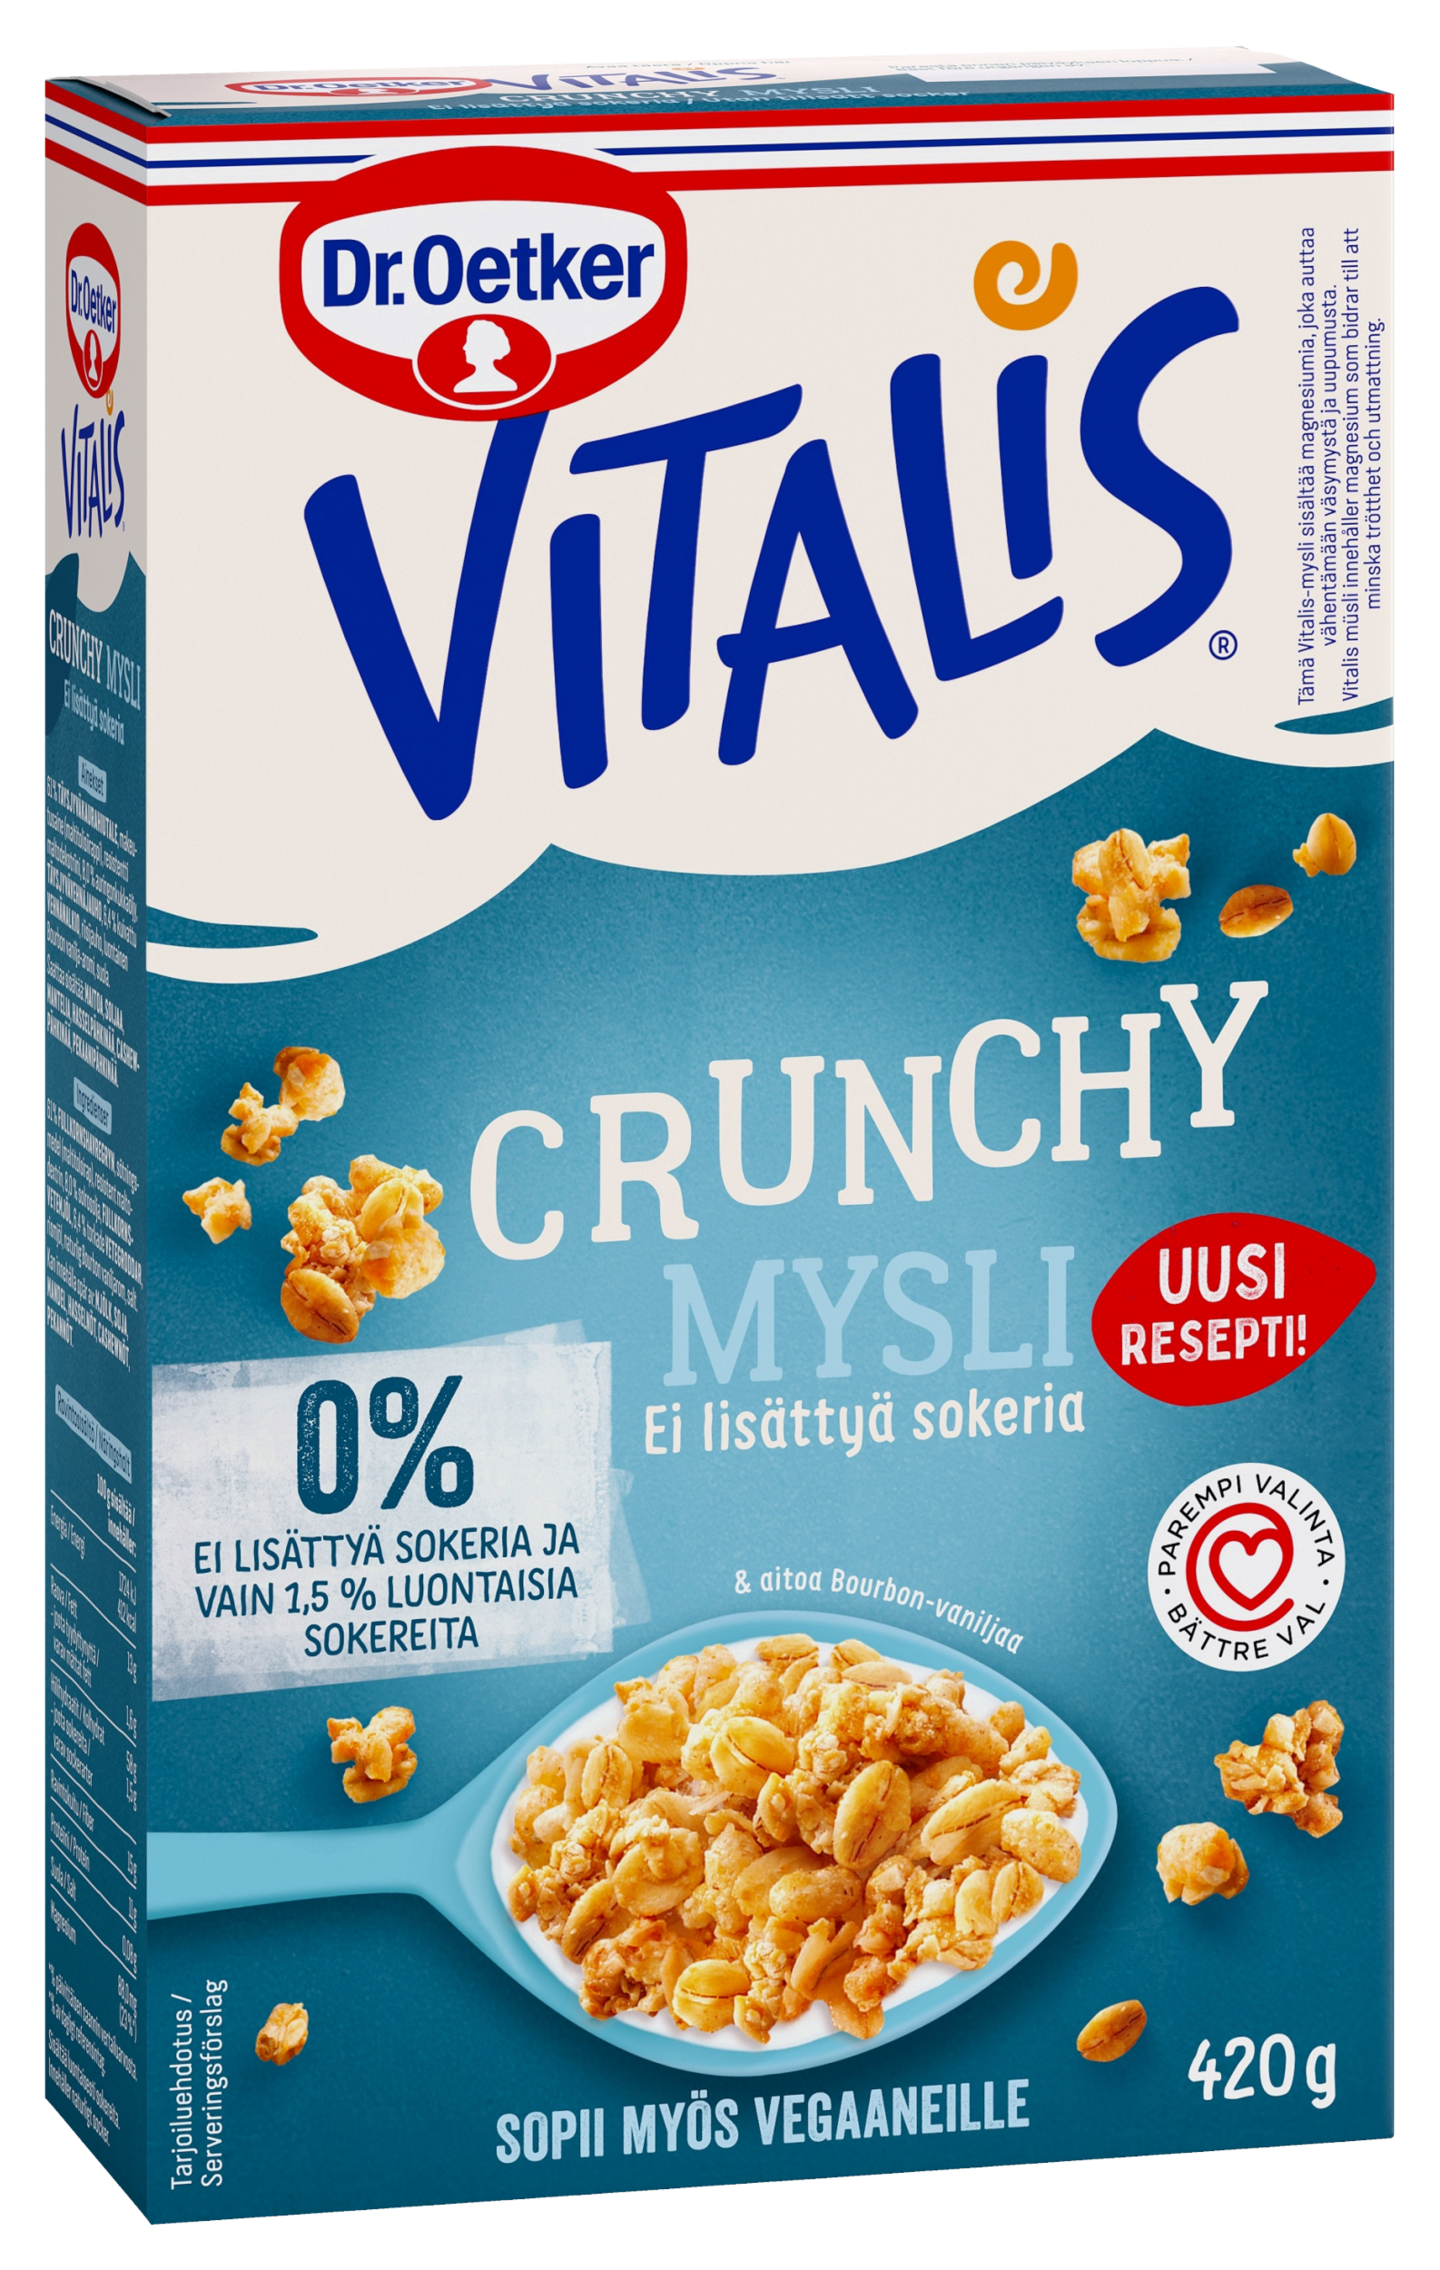 Vitalis Crunchy mysli Täysjyvä 420g ei lisättyä sokeria